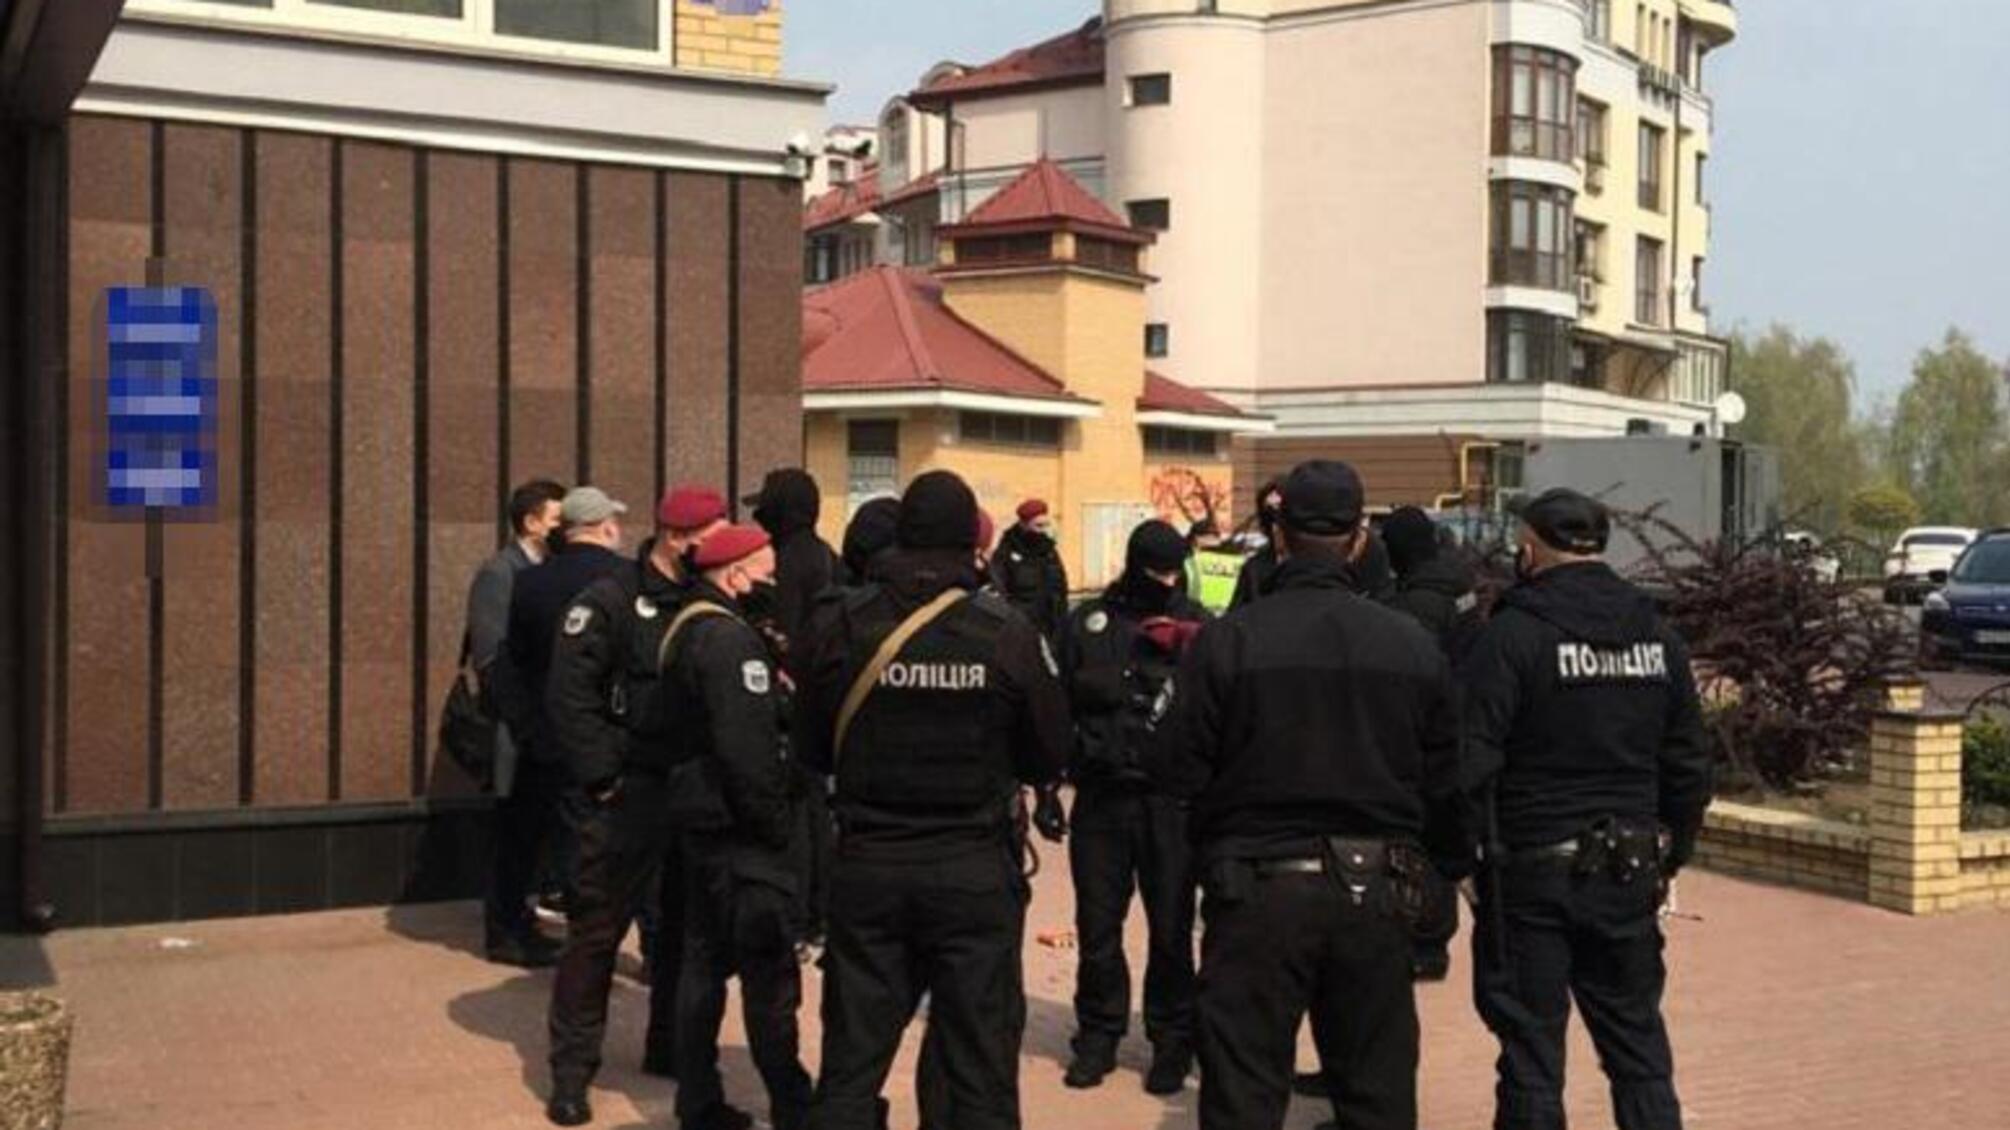 Поліція затримала групу осіб, яка намагалася захопити приватну компанію в Оболонському районі столиці